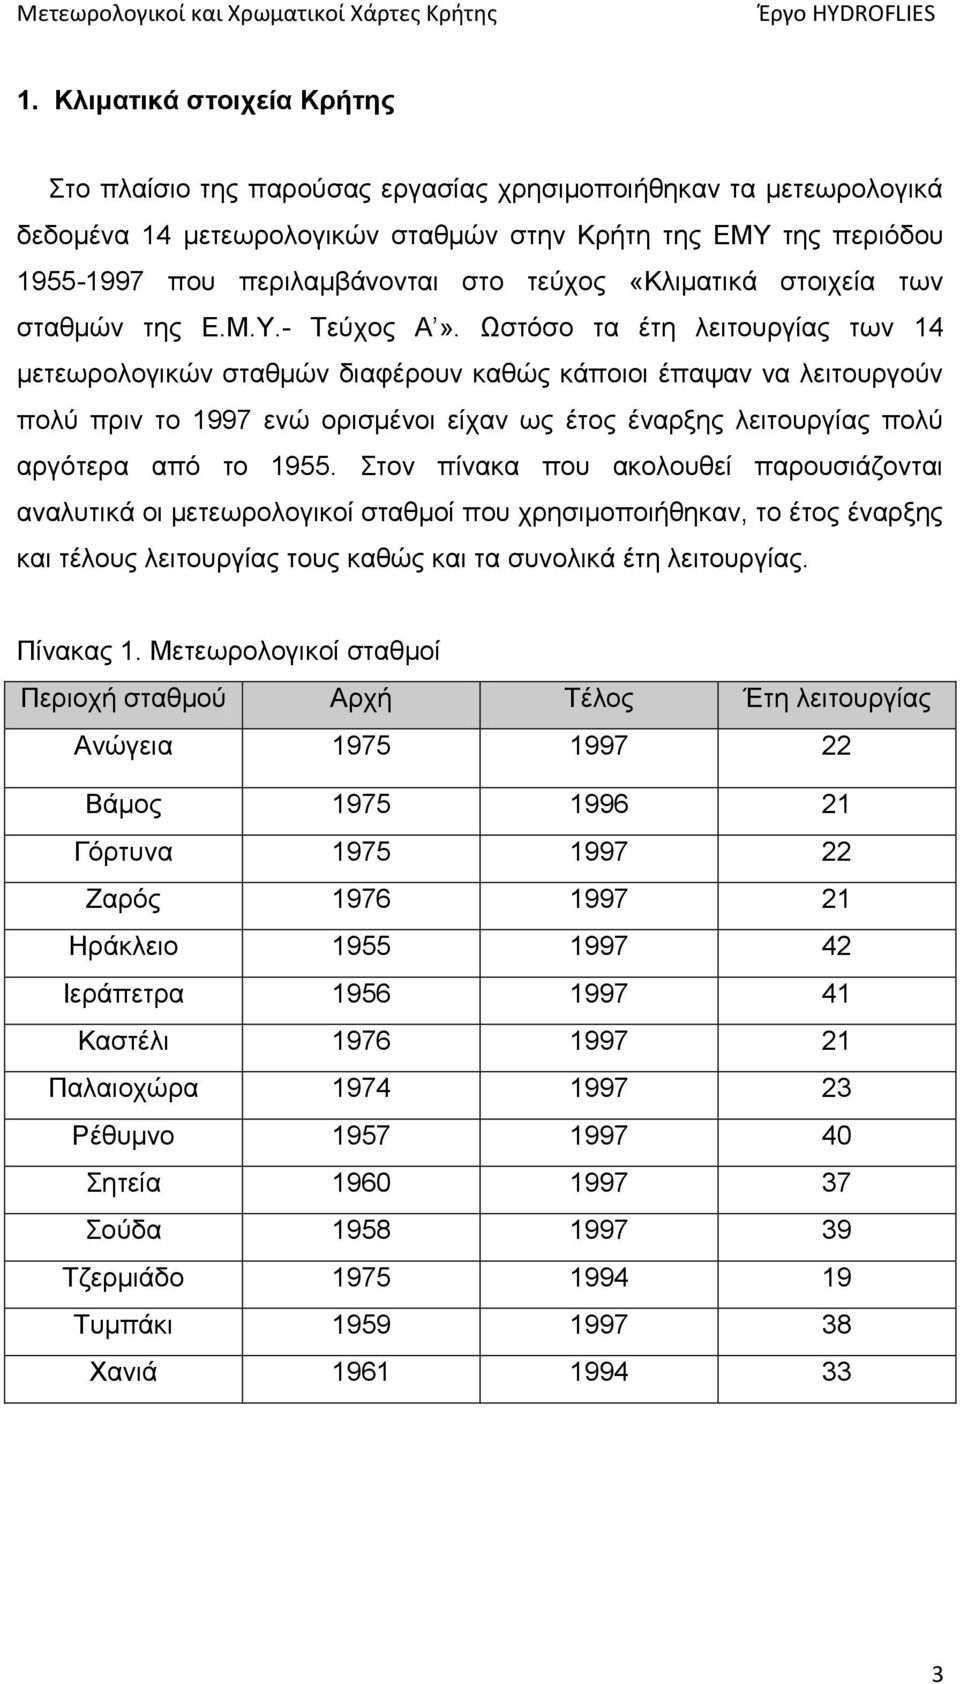 Ωστόσο τα έτη λειτουργίας των 14 μετεωρολογικών σταθμών διαφέρουν καθώς κάποιοι έπαψαν να λειτουργούν πολύ πριν το 1997 ενώ ορισμένοι είχαν ως έτος έναρξης λειτουργίας πολύ αργότερα από το 1955.